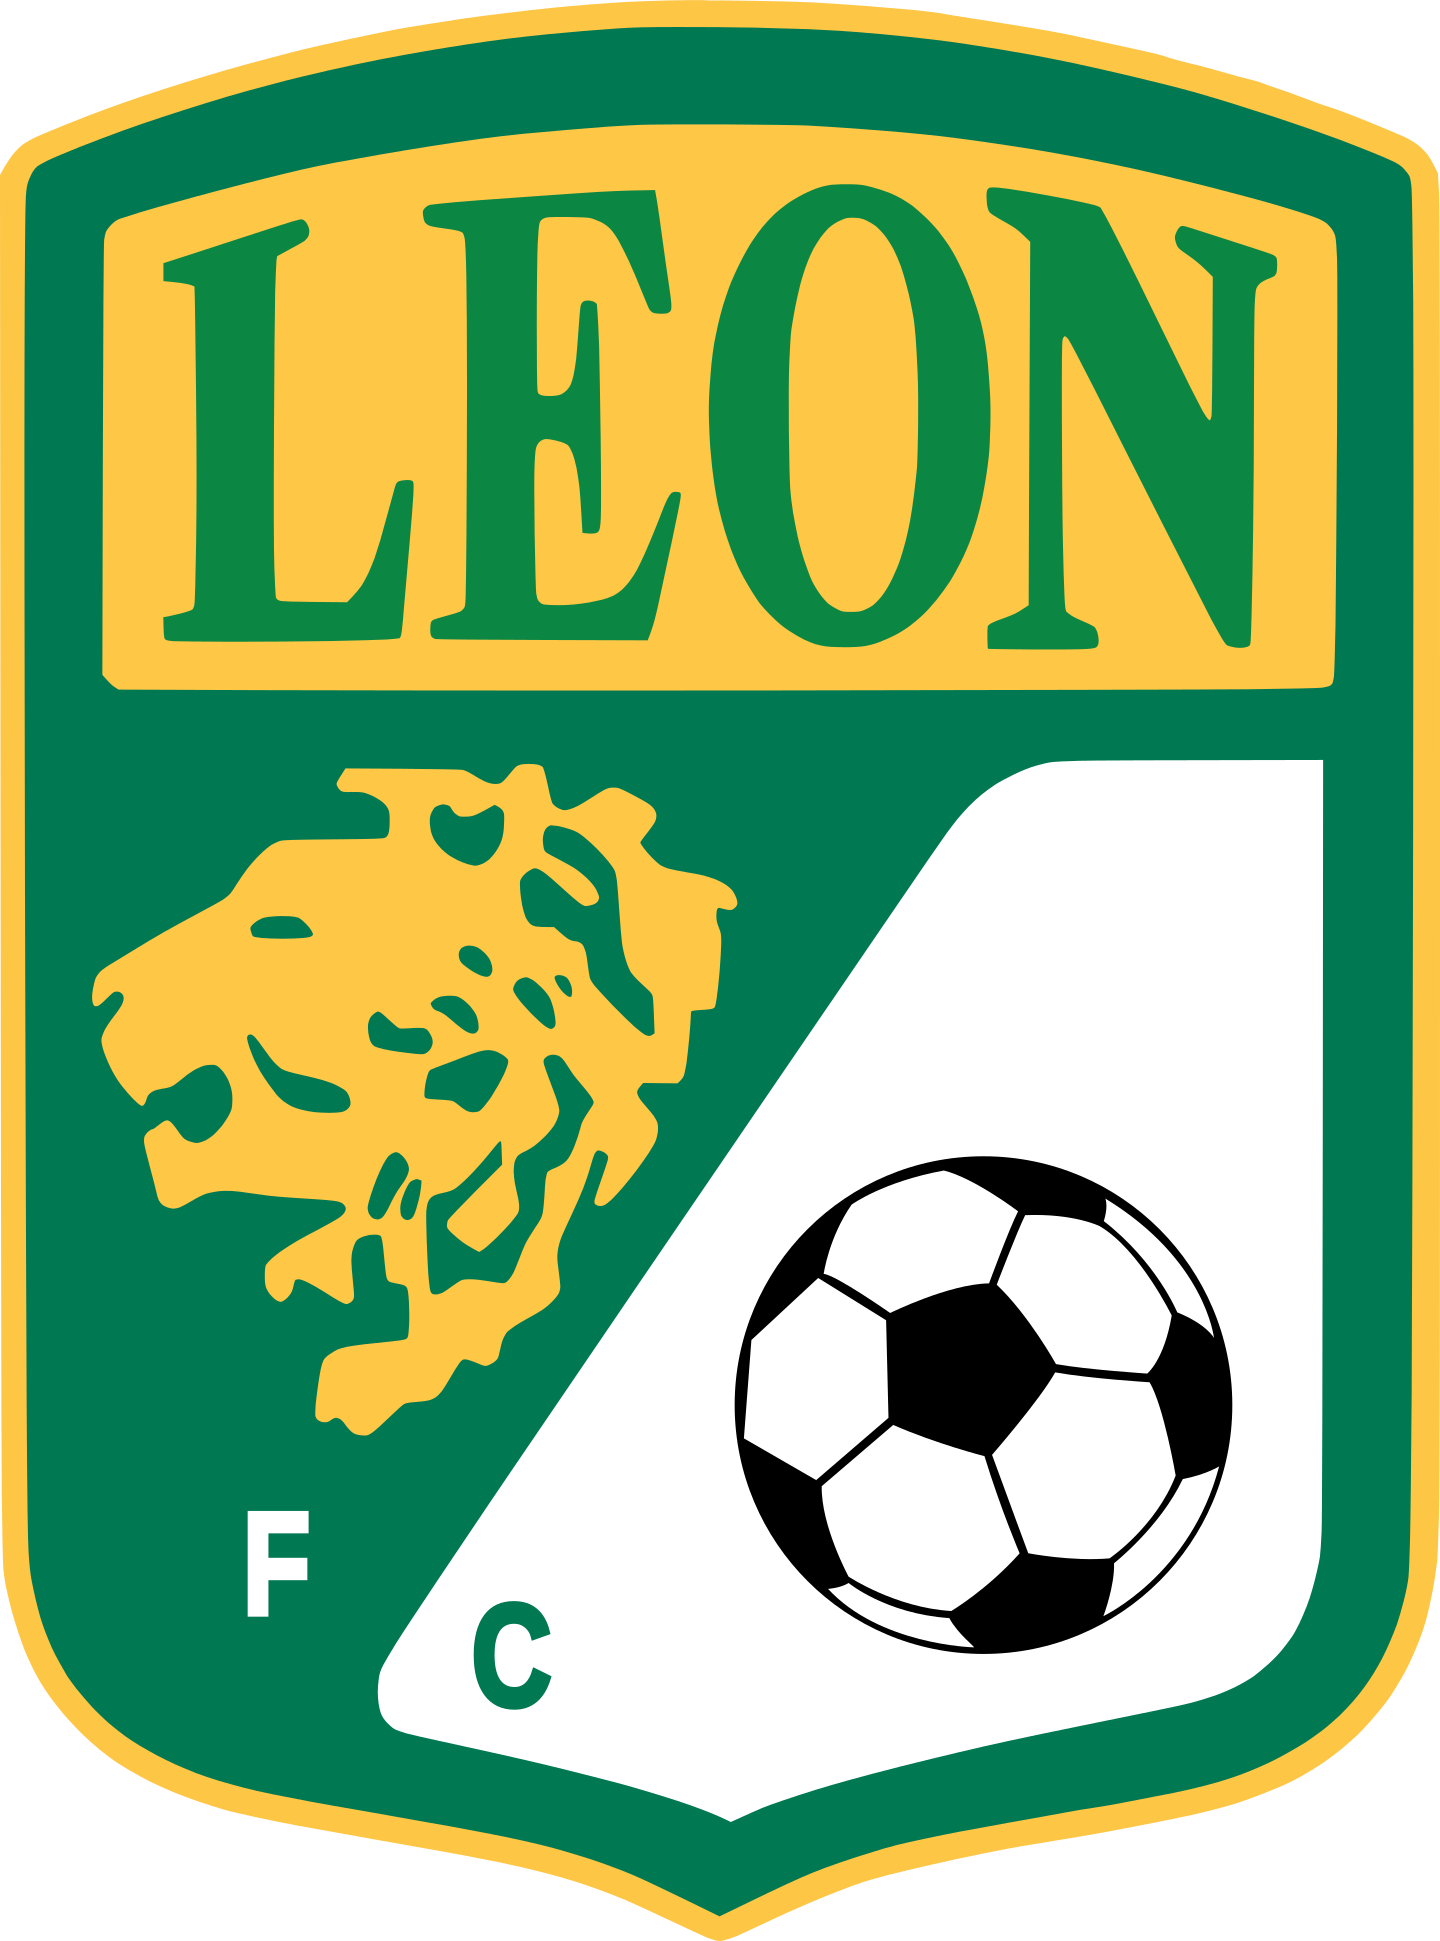 club leon logo 2 - Club León Logo